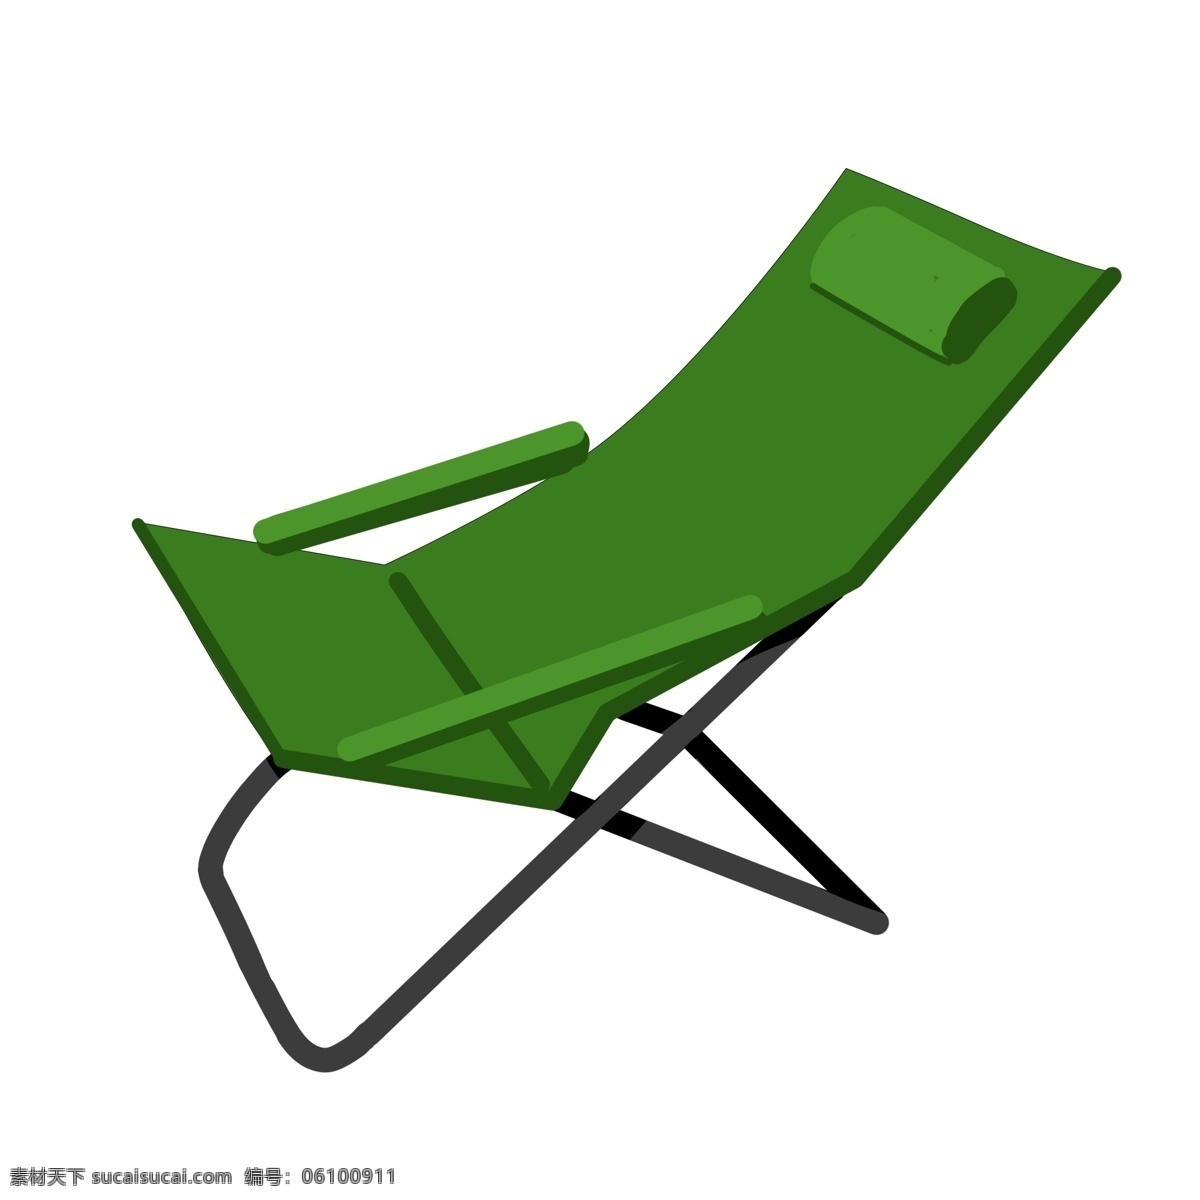 绿色折叠躺椅 躺椅 折叠 座椅 家具